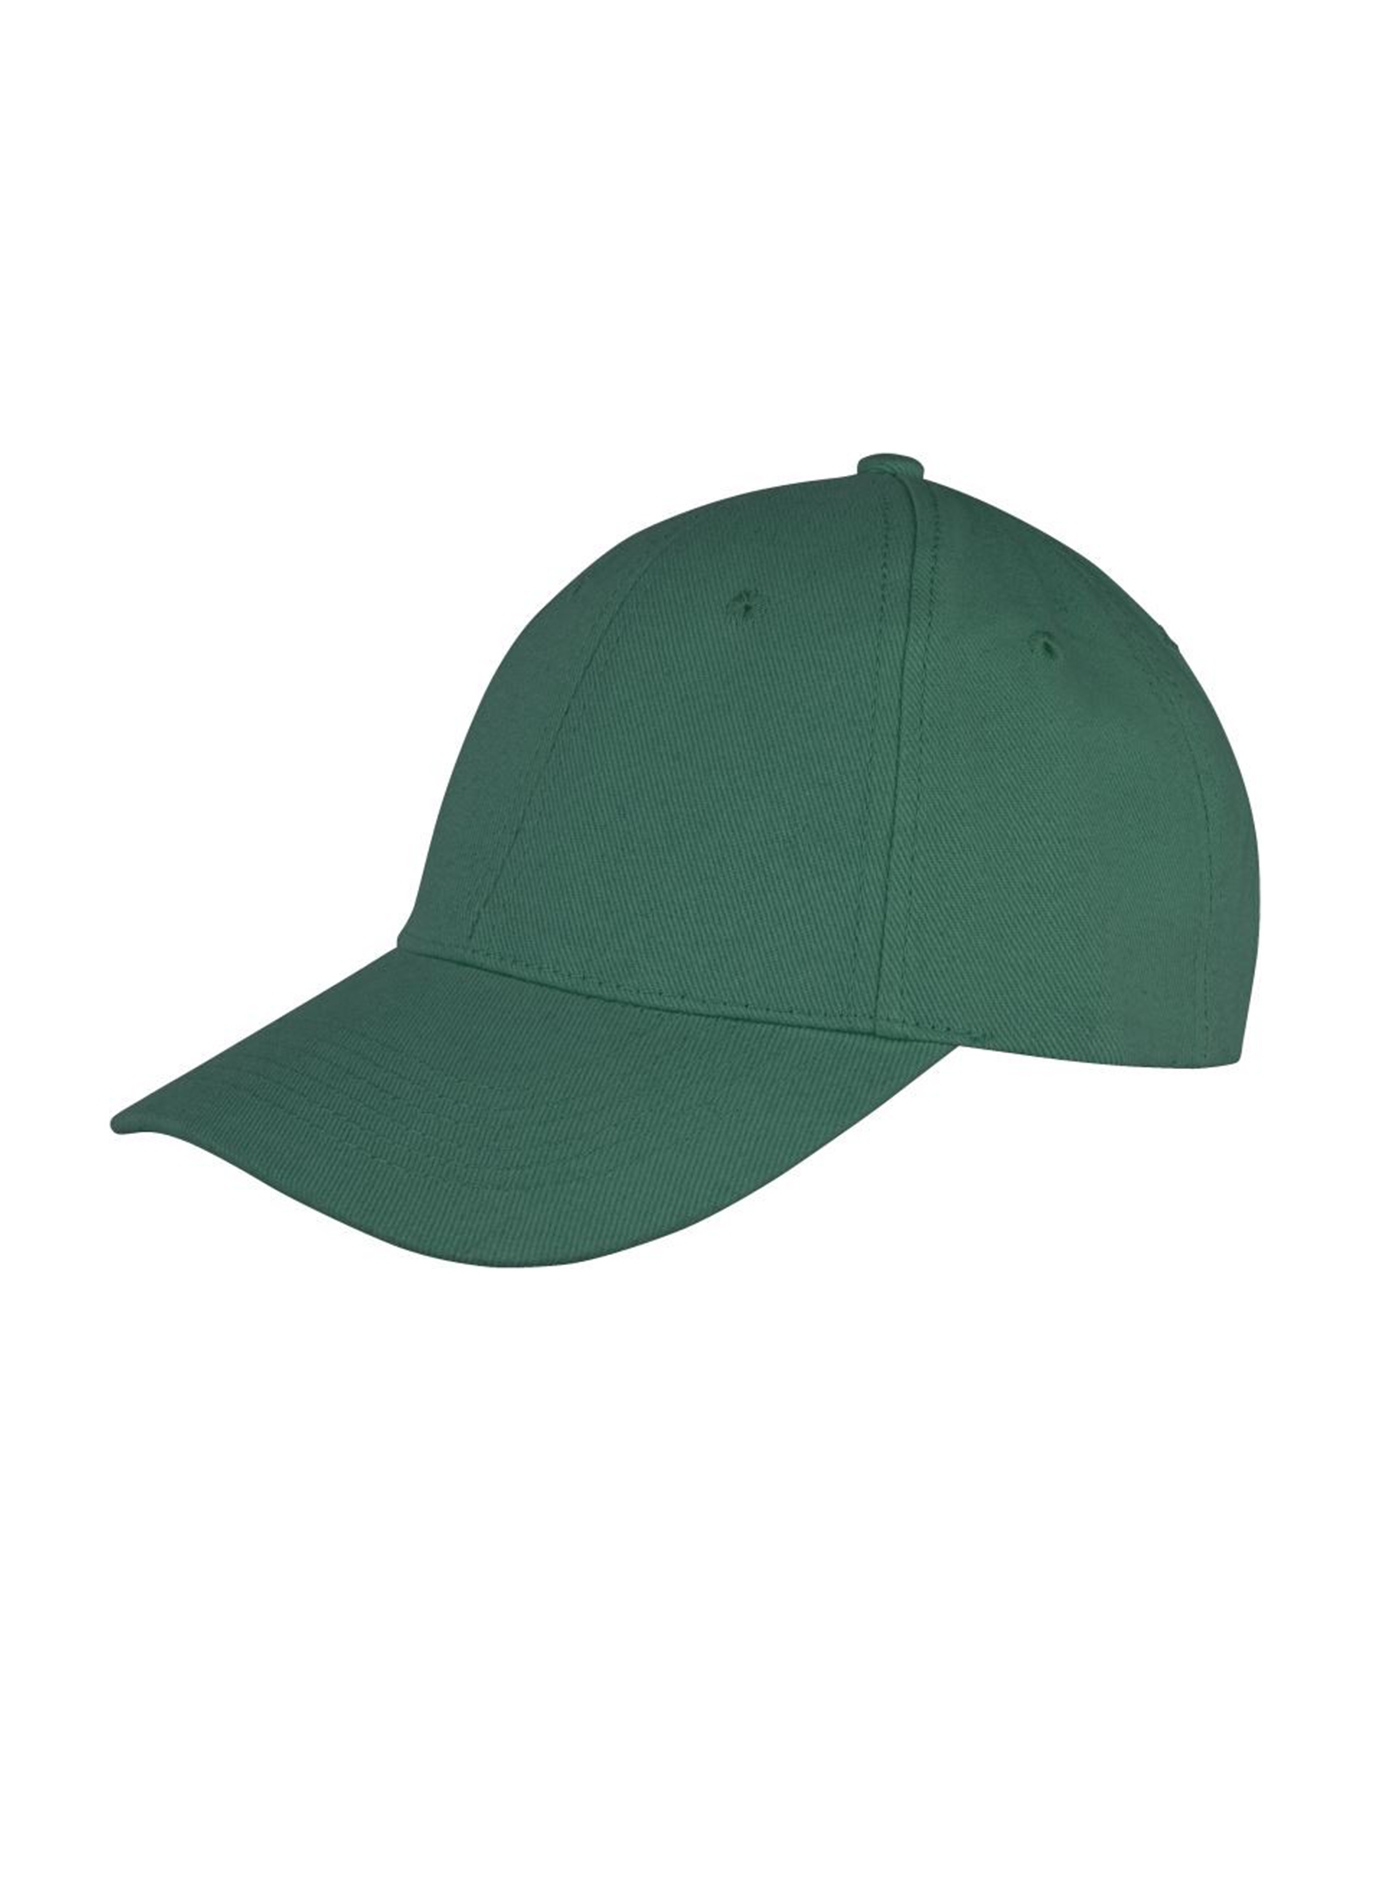 Kšiltovka Result headwear s nízkým profilem - Lahvově zelená univerzal